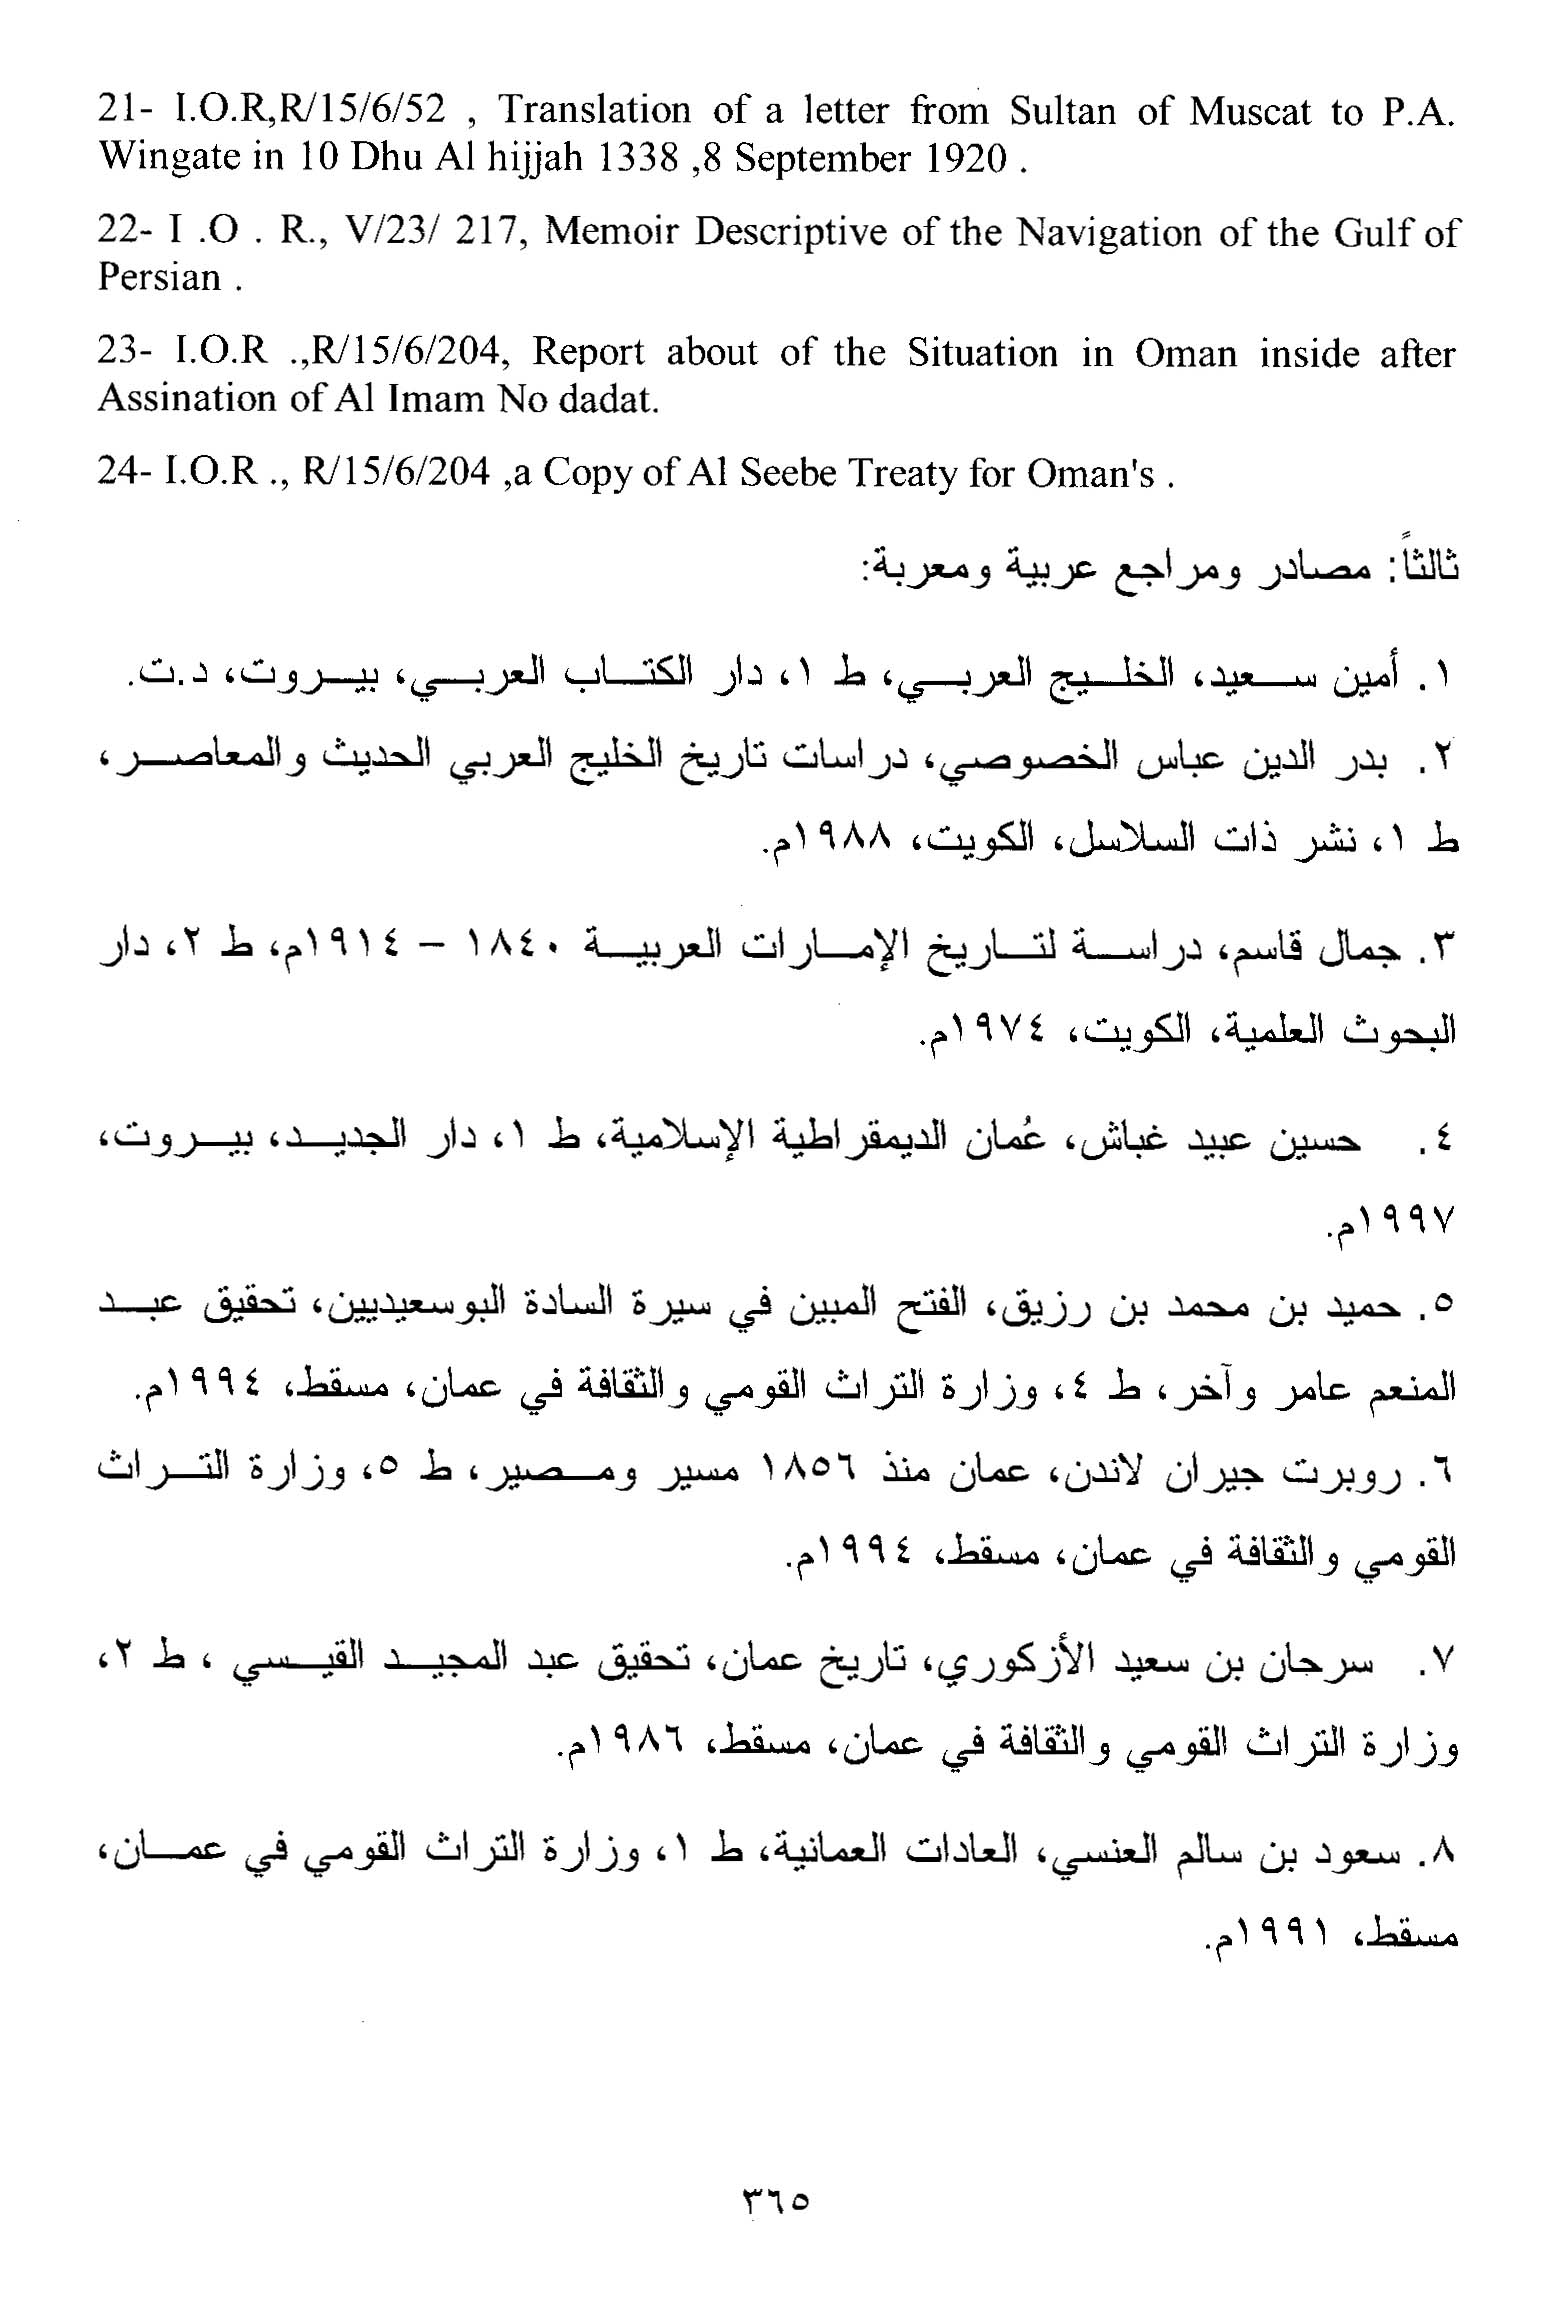 الأرشيف دراسات تاريخية العدد 125 126 تاريخ الإصدار 1 يونيو 2014 مقالة نظام الإمامة في عمان بين عامي 1913 1920م بحث في تاريخ العرب الحديث والمعاصر